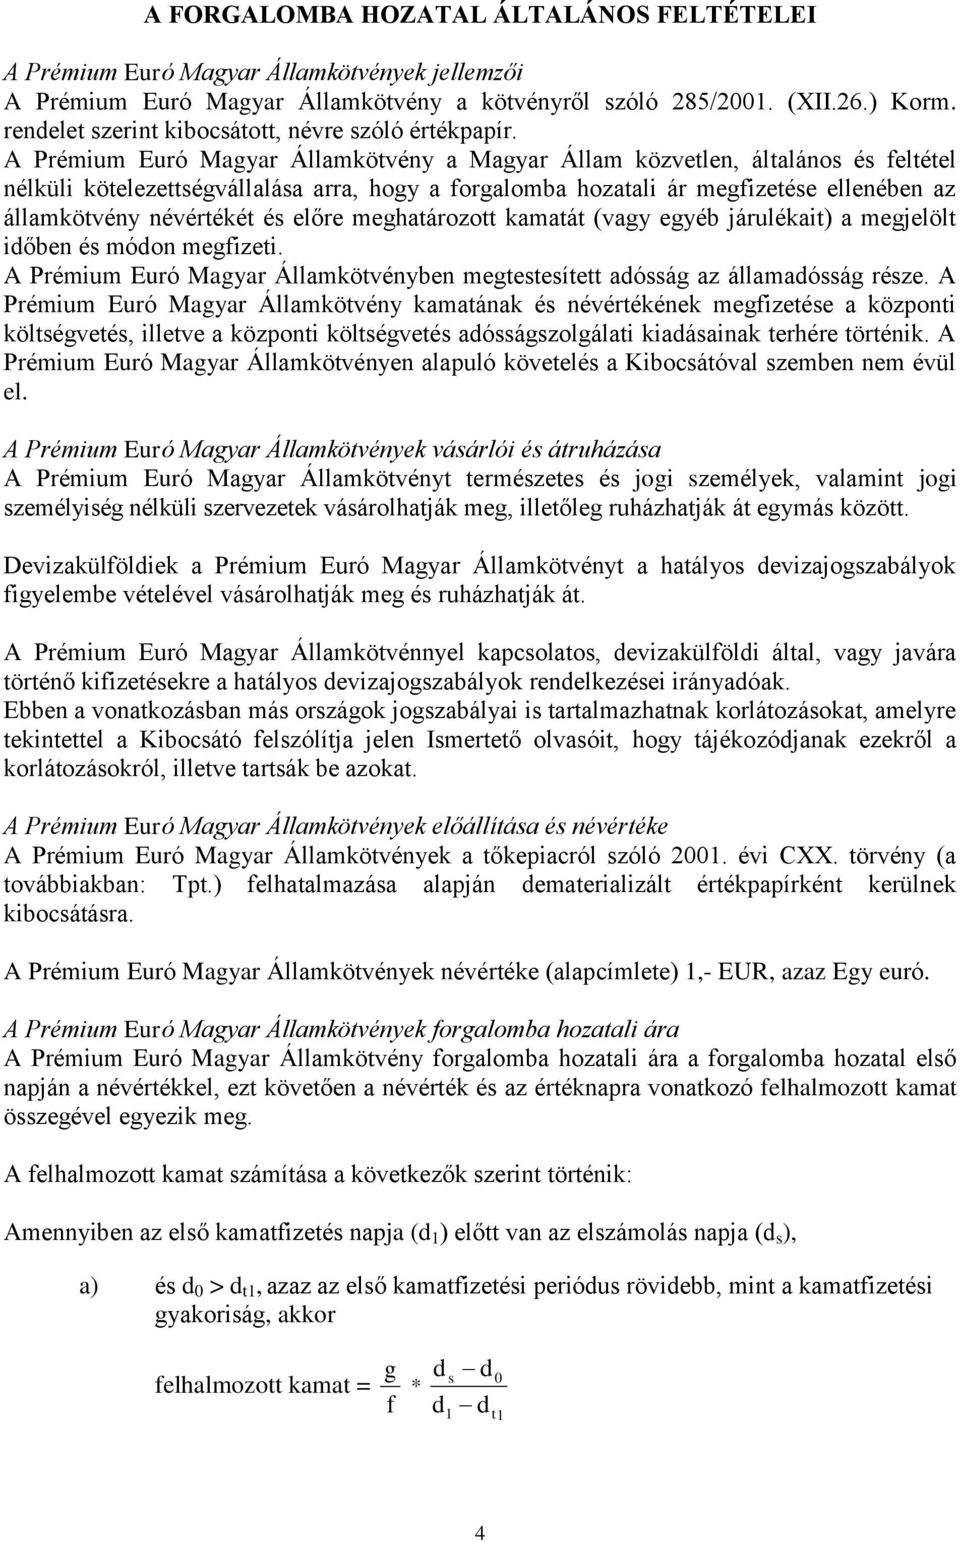 A Prémium Euró Magyar Államkötvény a Magyar Állam közvetlen, általános és feltétel nélküli kötelezettségvállalása arra, hogy a forgalomba hozatali ár megfizetése ellenében az államkötvény névértékét